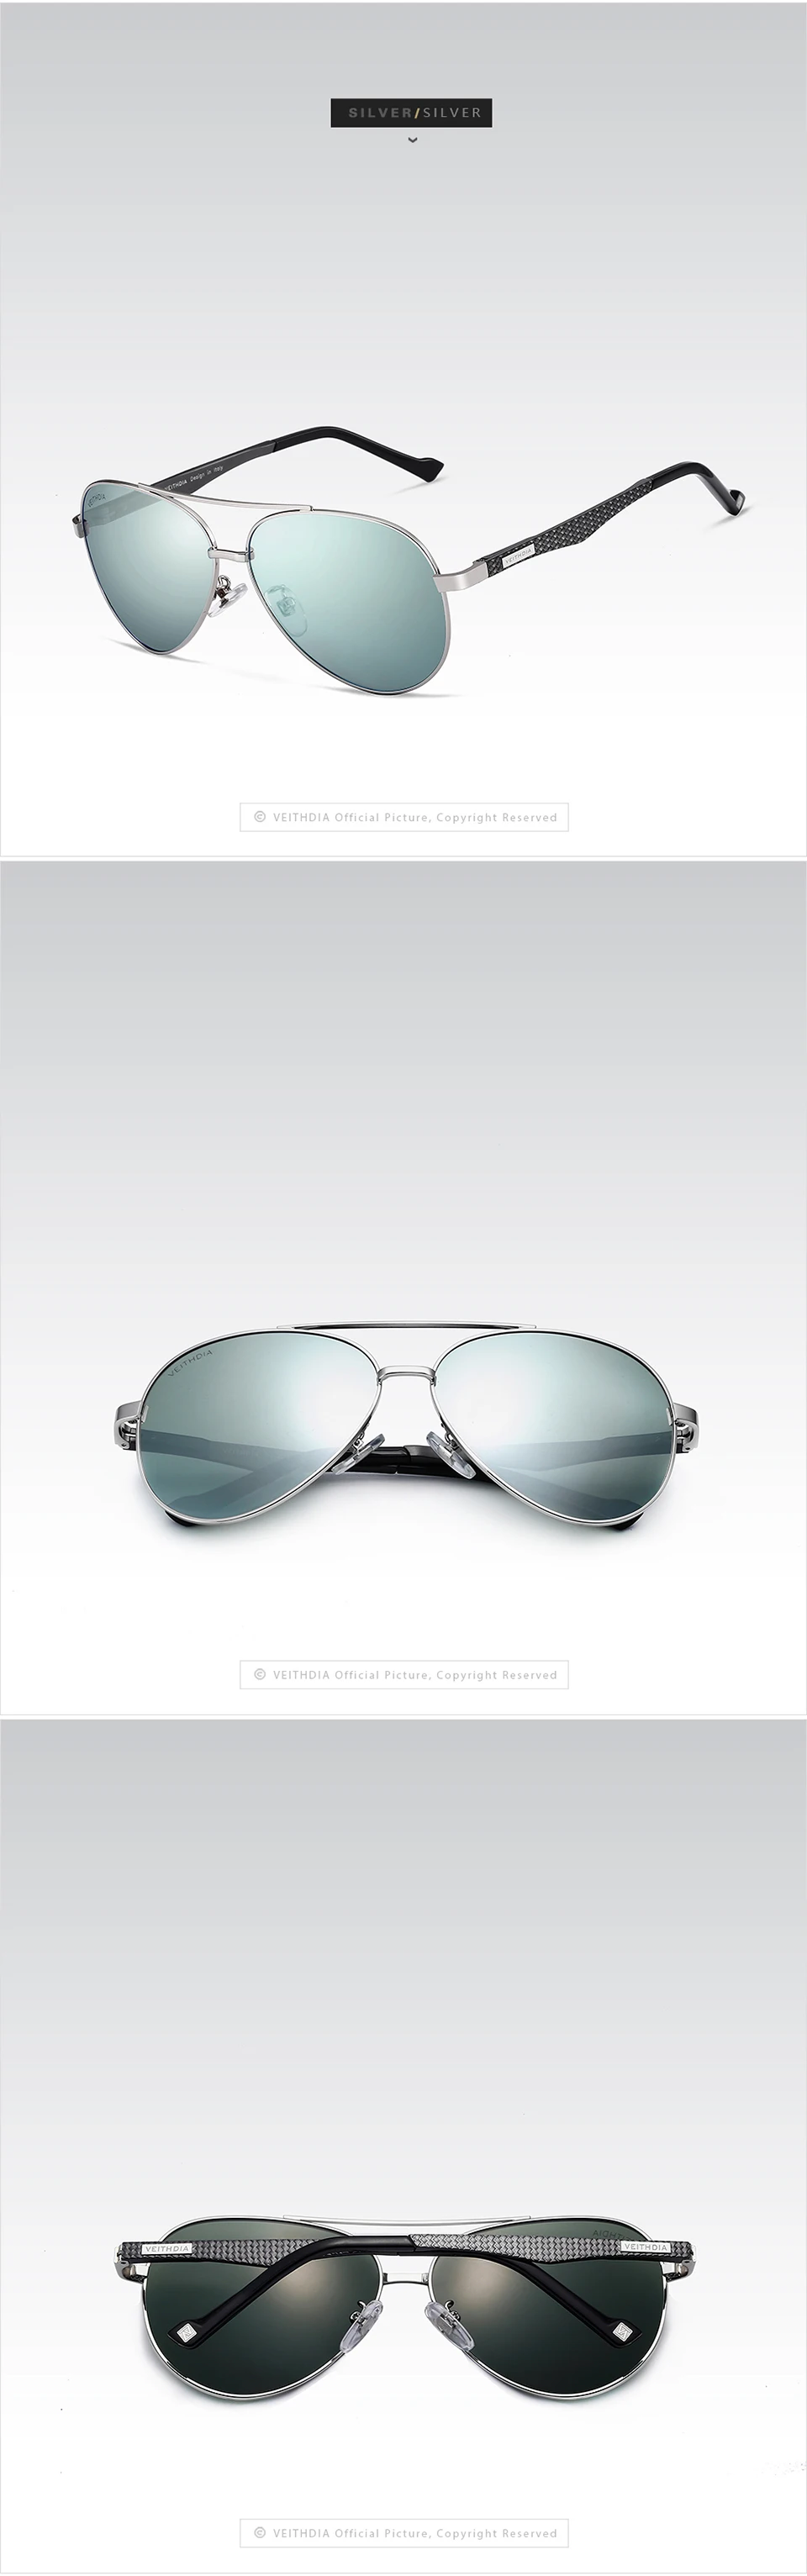 Солнцезащитные зеркальные очки унисекс VEITHDIA, модные алюминиевые очки с поляризационными стеклами для женщин и мужчин, модель 3850